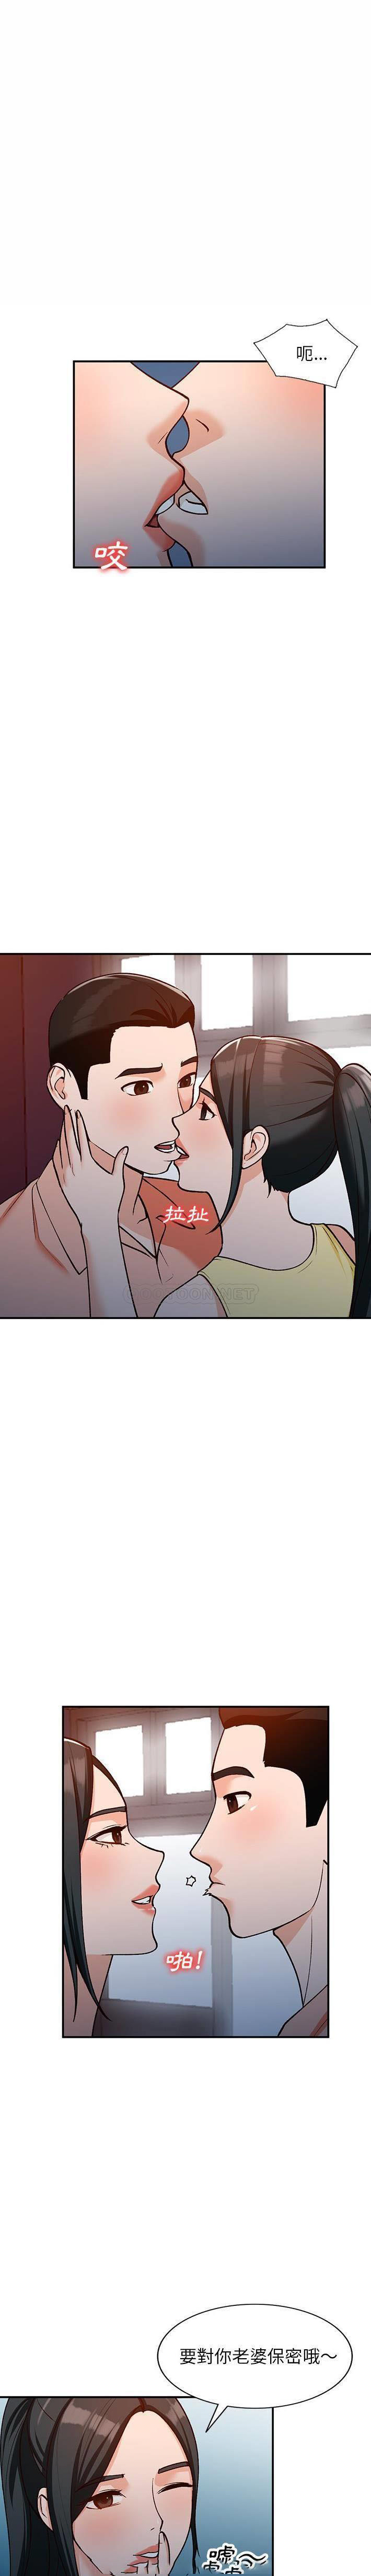 韩国污漫画 她們的小秘密(小鎮上的女人們) 第29话 19